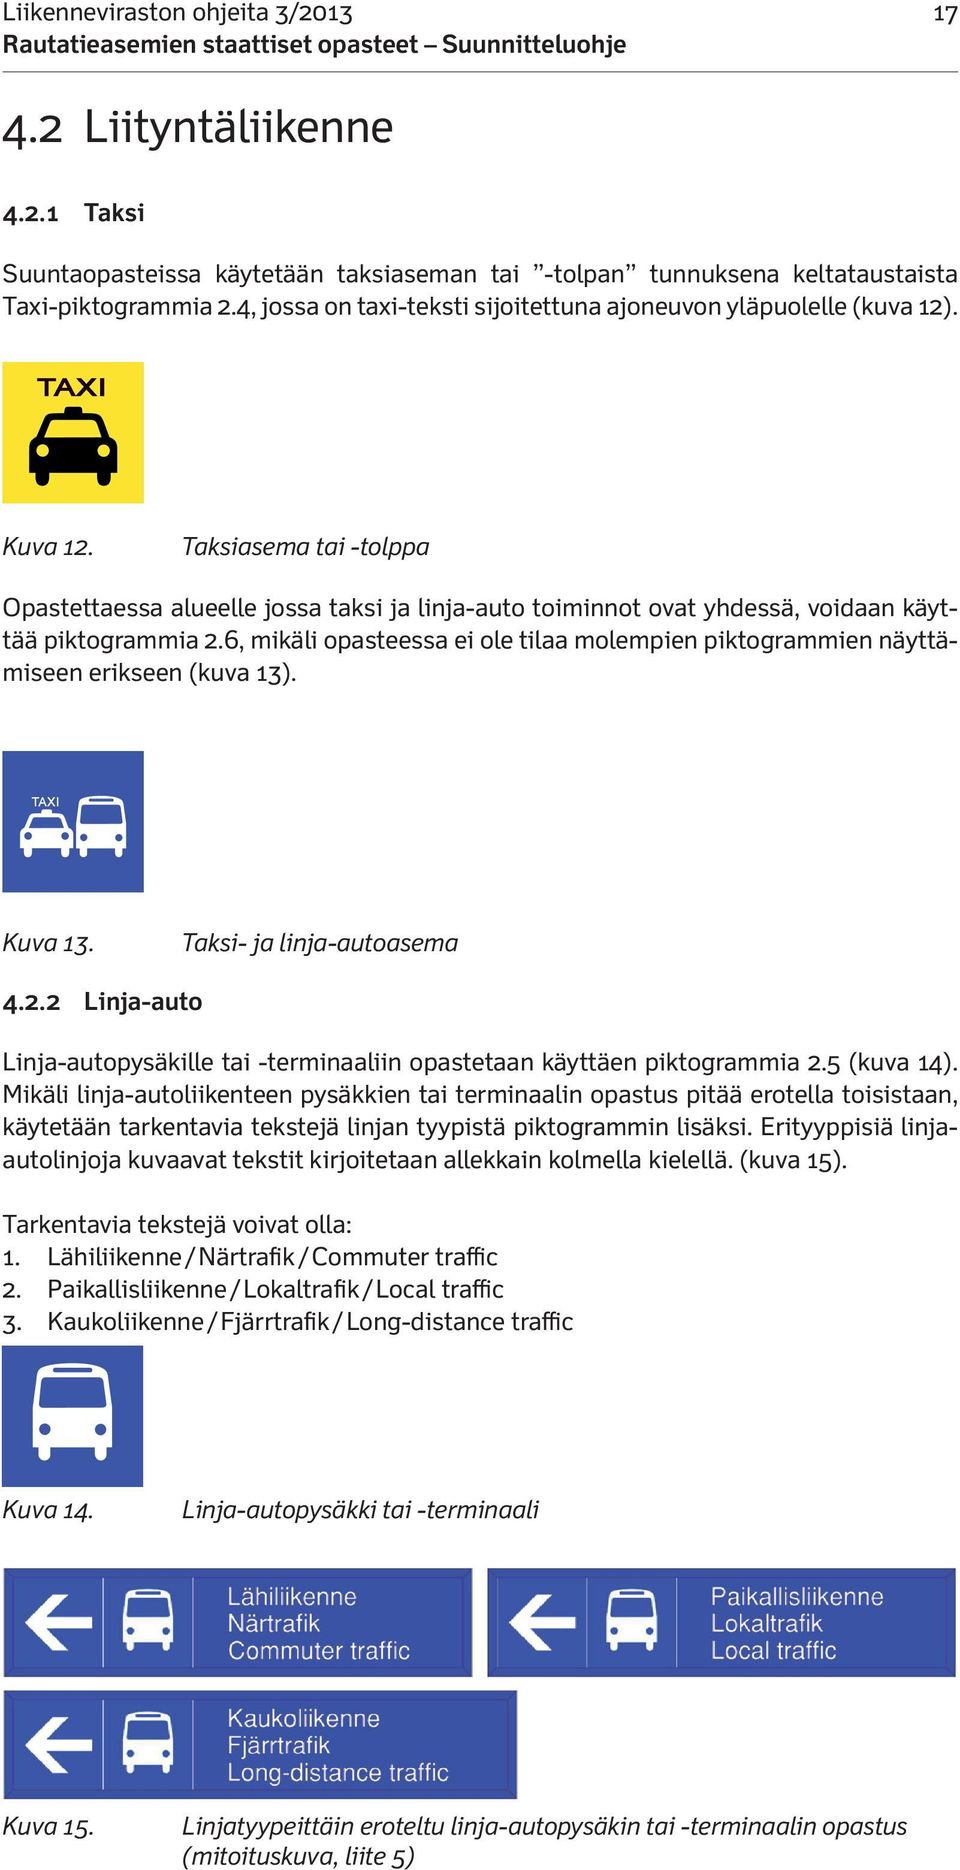 Taksiasema tai -tolppa Opastettaessa alueelle jossa taksi ja linja-auto toiminnot ovat yhdessä, voidaan käyttää piktogrammia 2.